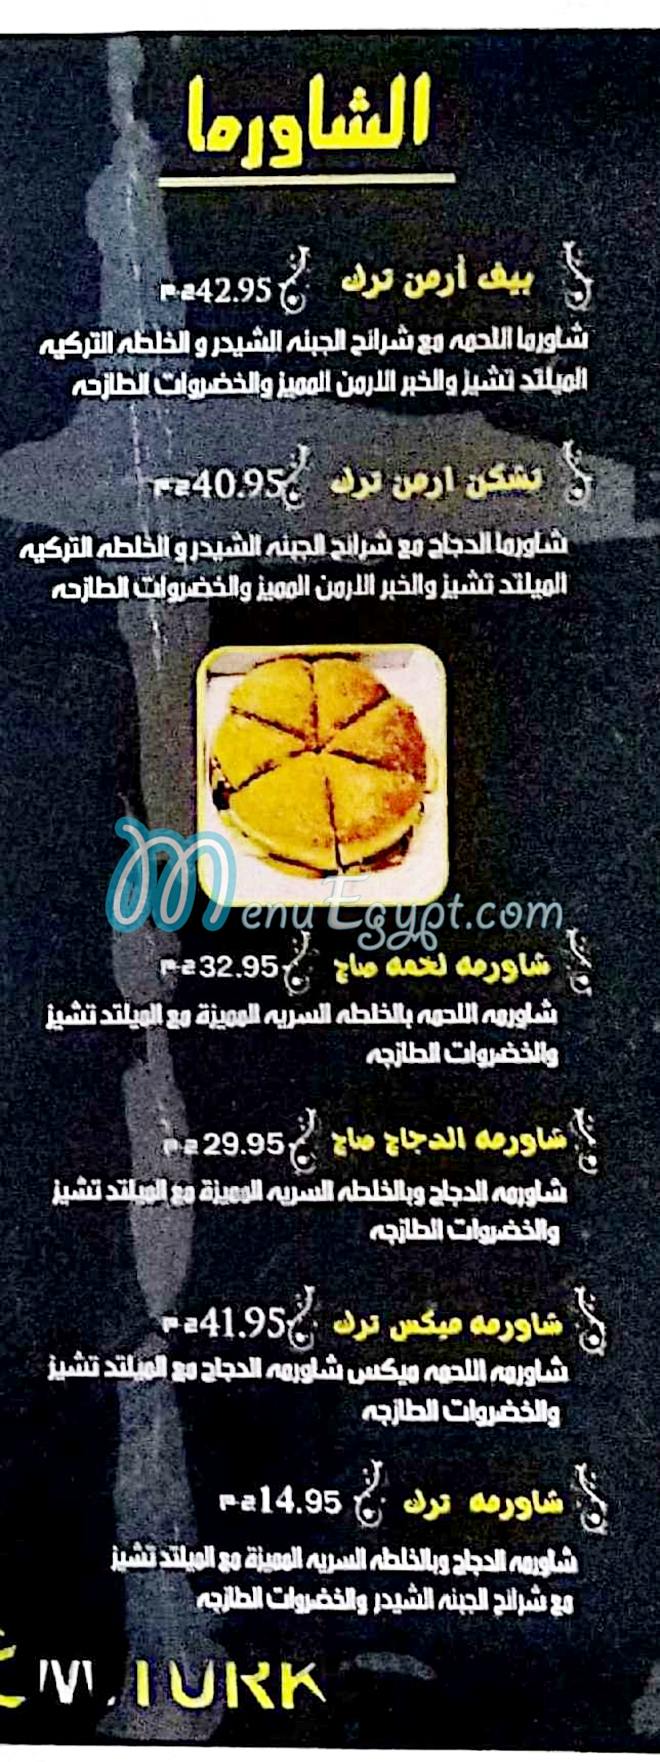 Mt3m Turk menu Egypt 1